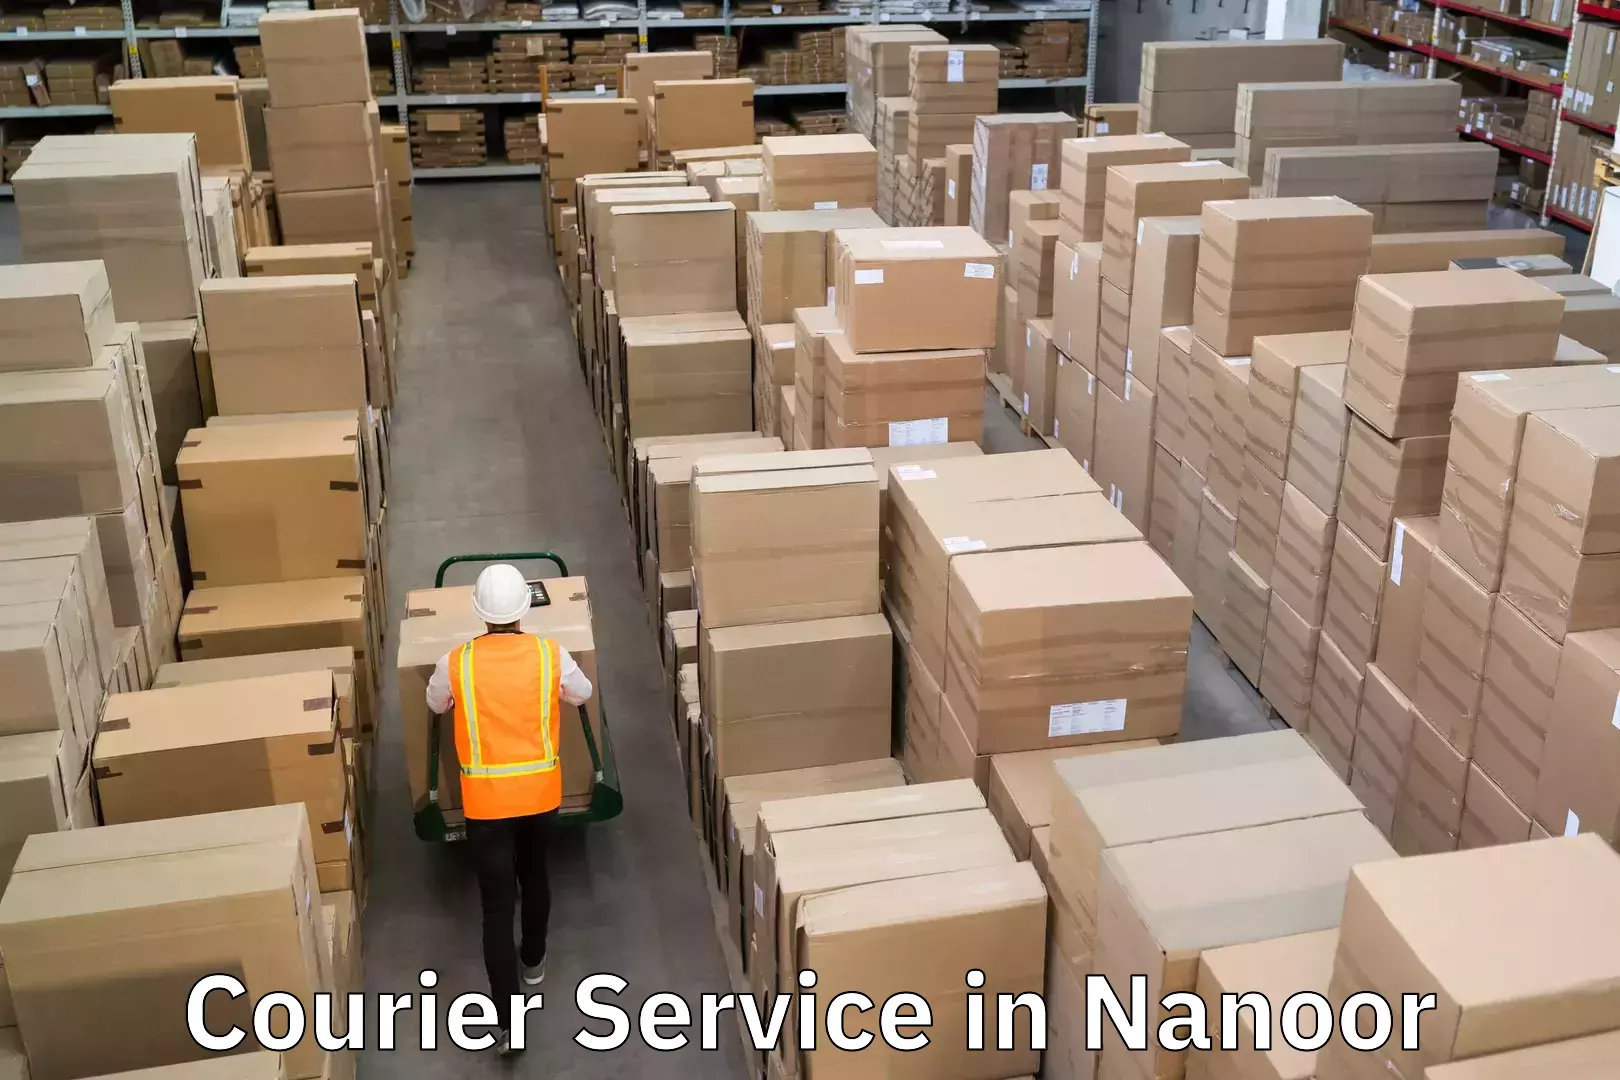 Express courier capabilities in Nanoor